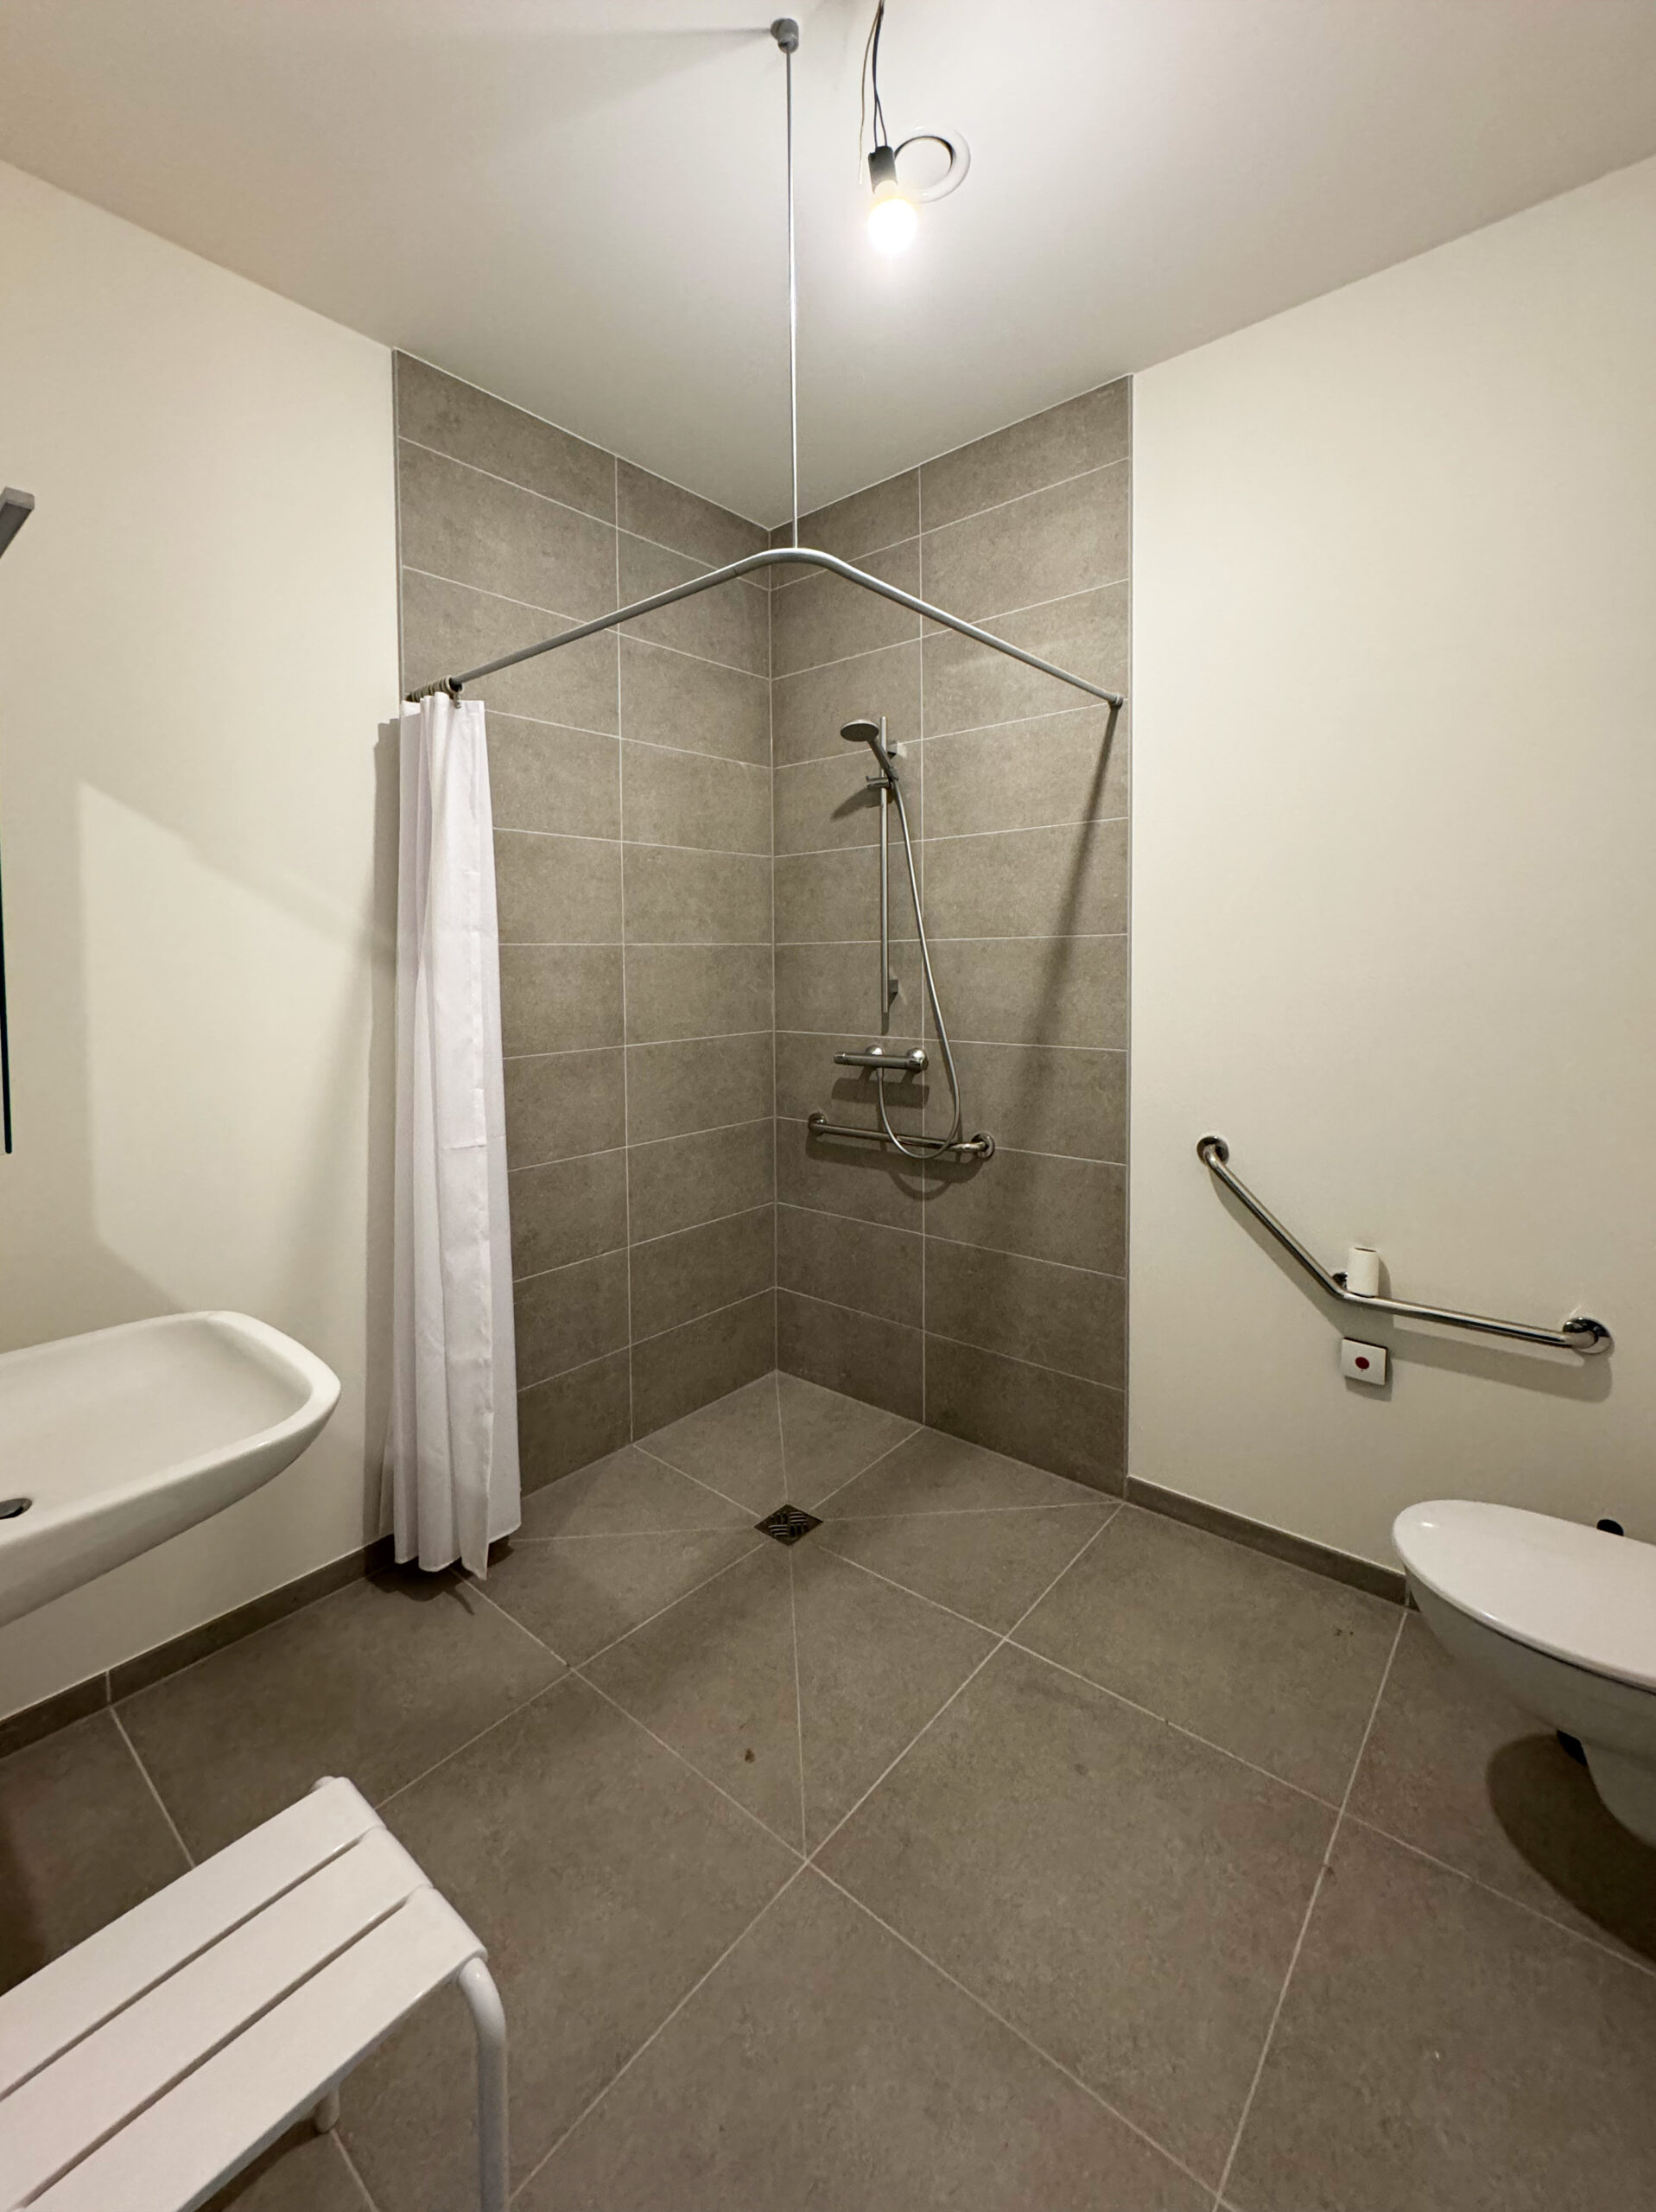 Toegankelijke badkamer in een assistentiewoning, uitgerust met een noodoproepsysteem voor extra veiligheid.